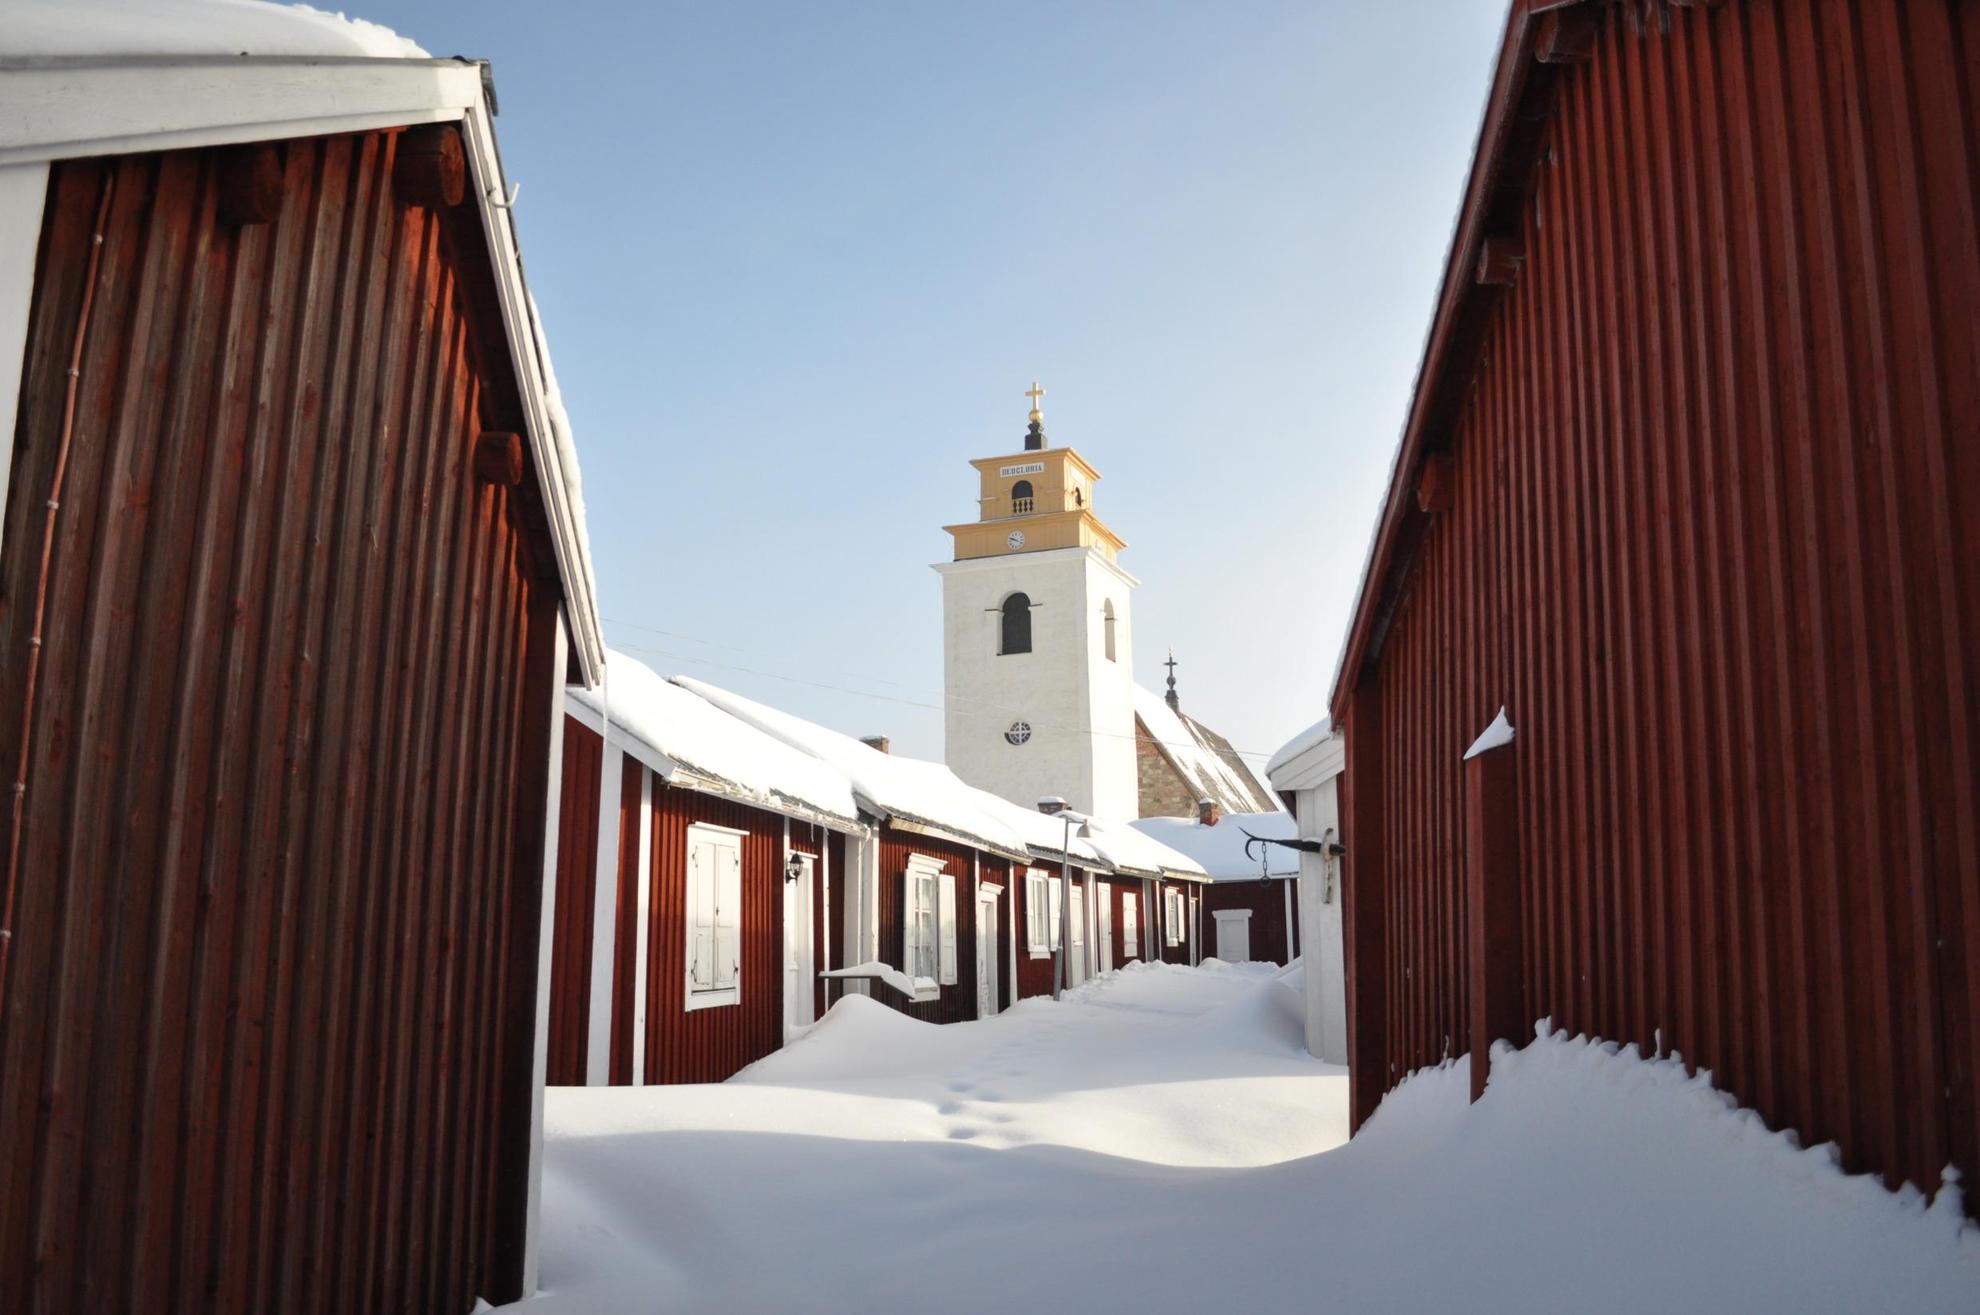 Gammelstad Church Town in northern Sweden